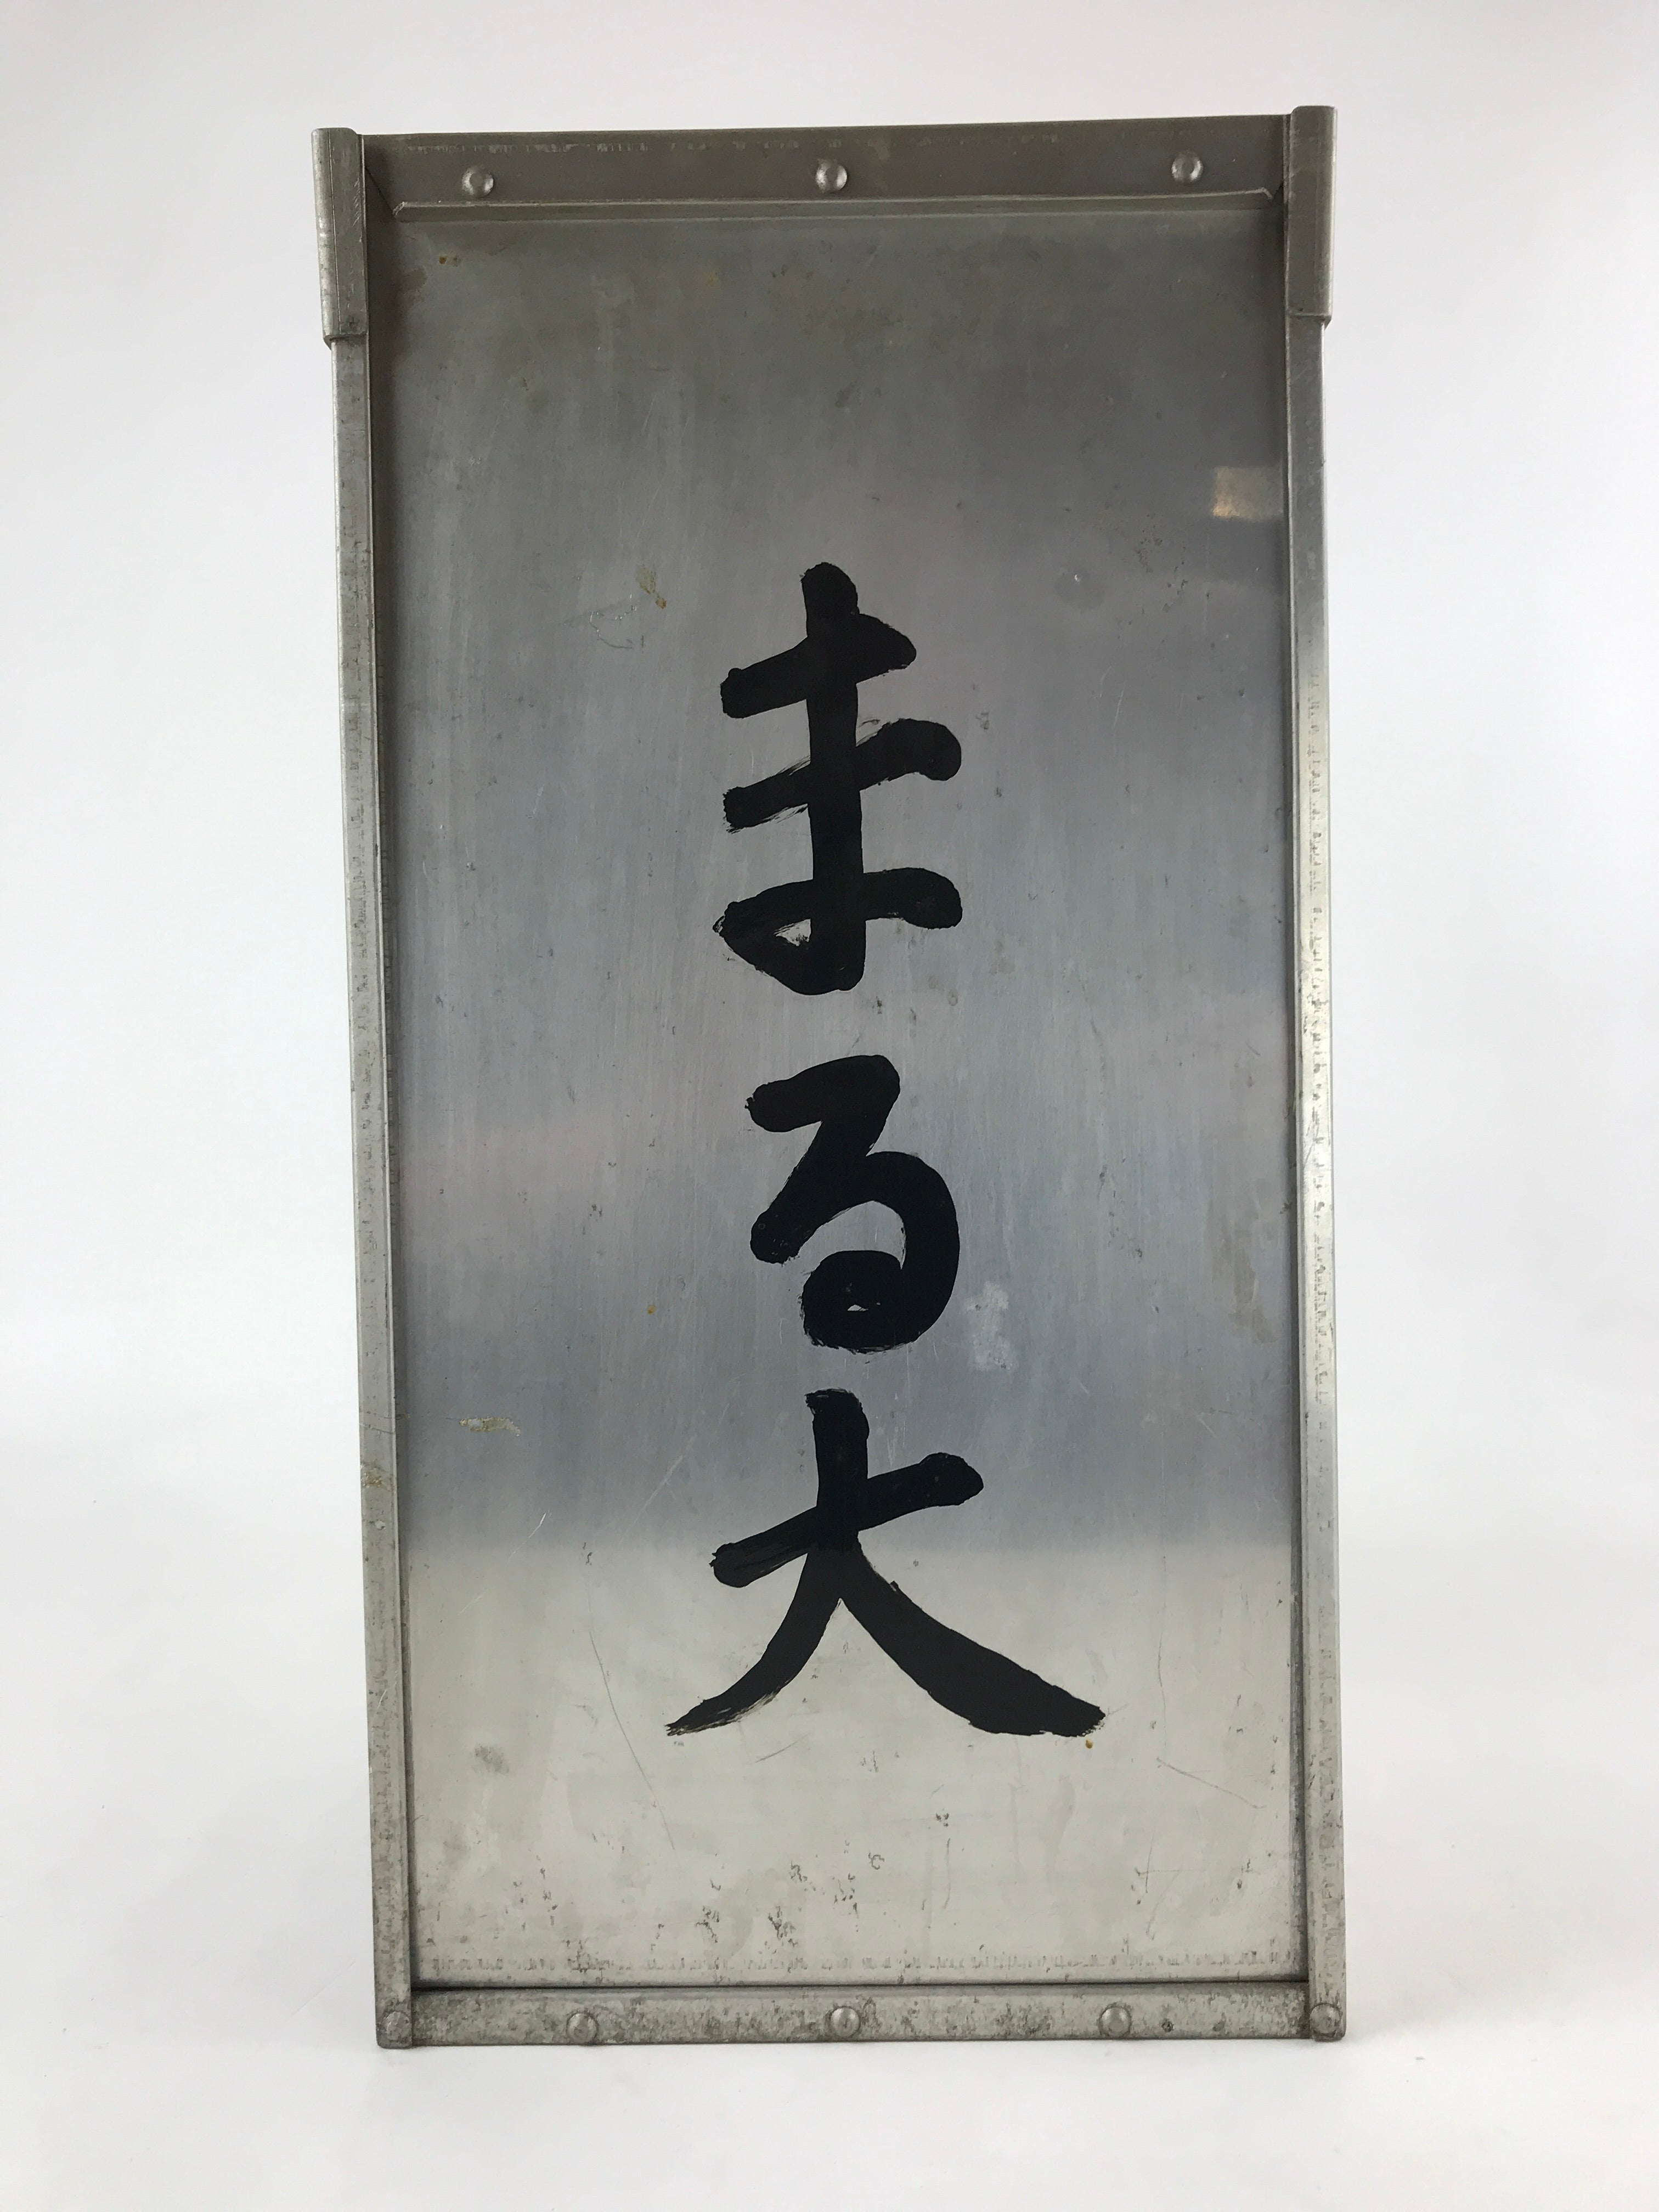 Japanese Metal Restaurant Delivery Box Vtg Wood Handle Shelves Ramen JK602